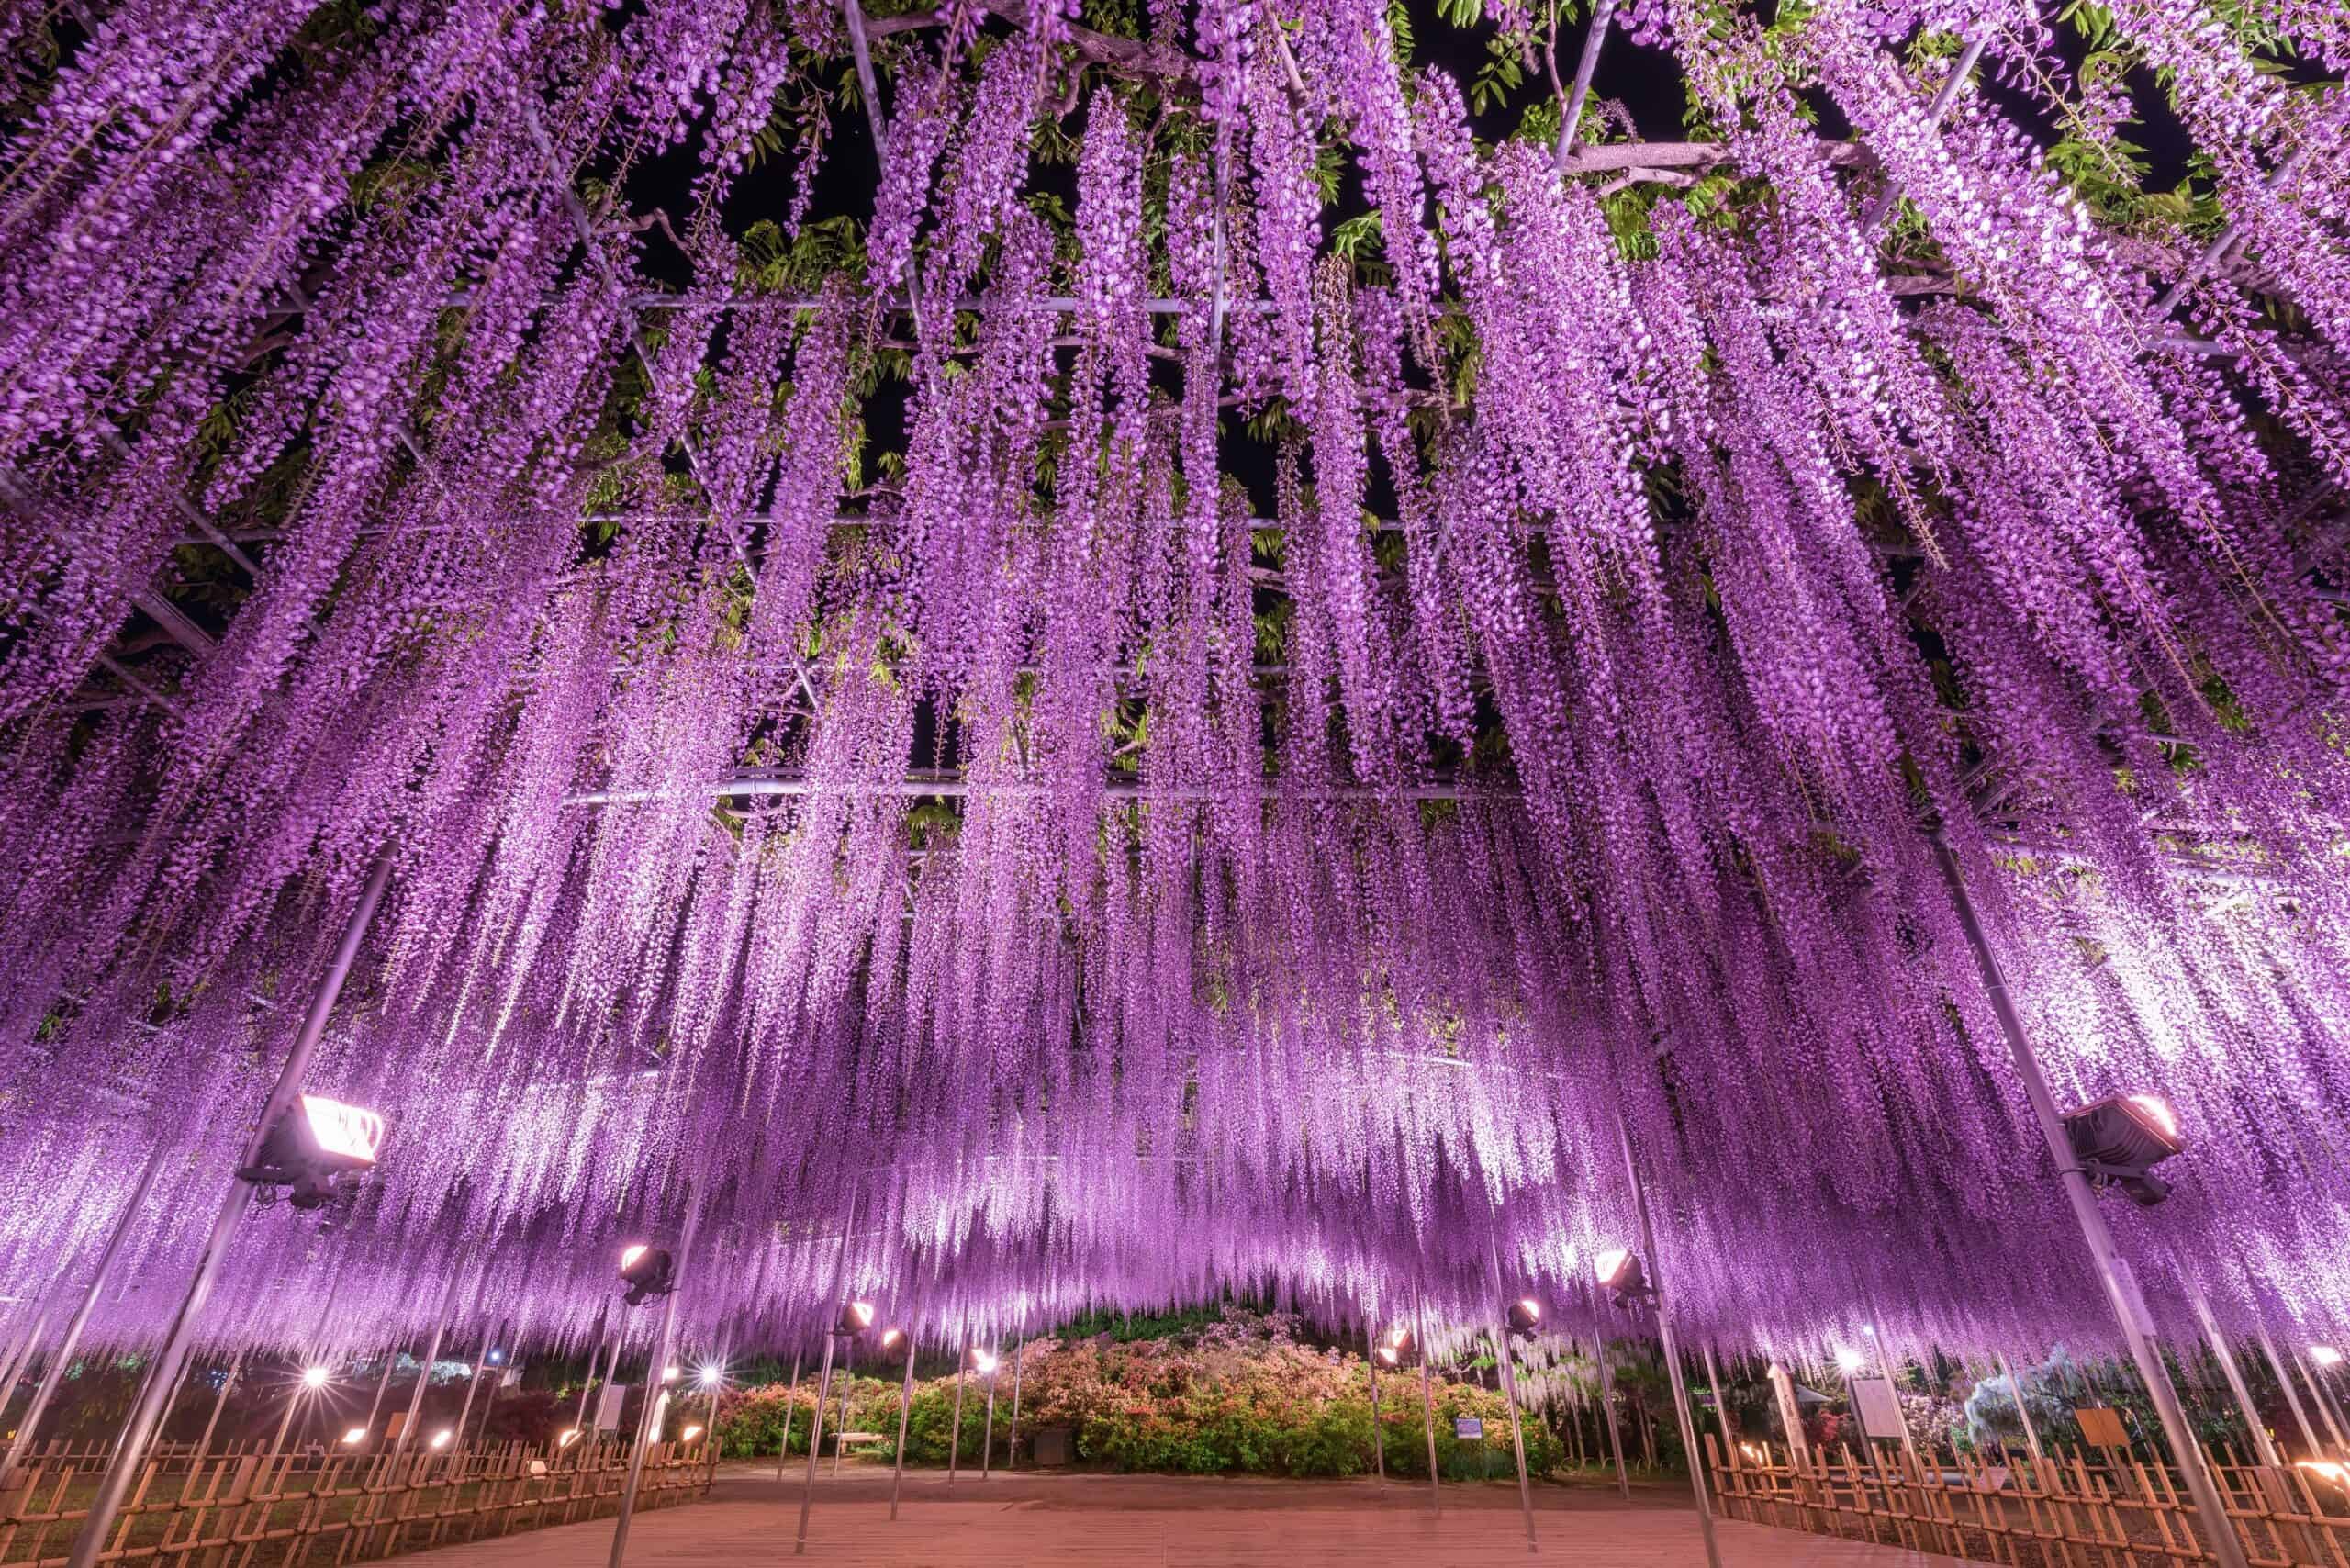 Best things to do in Nikko Japan - Derek Souza - Wisteria Festival at Ashikaga Flower Park